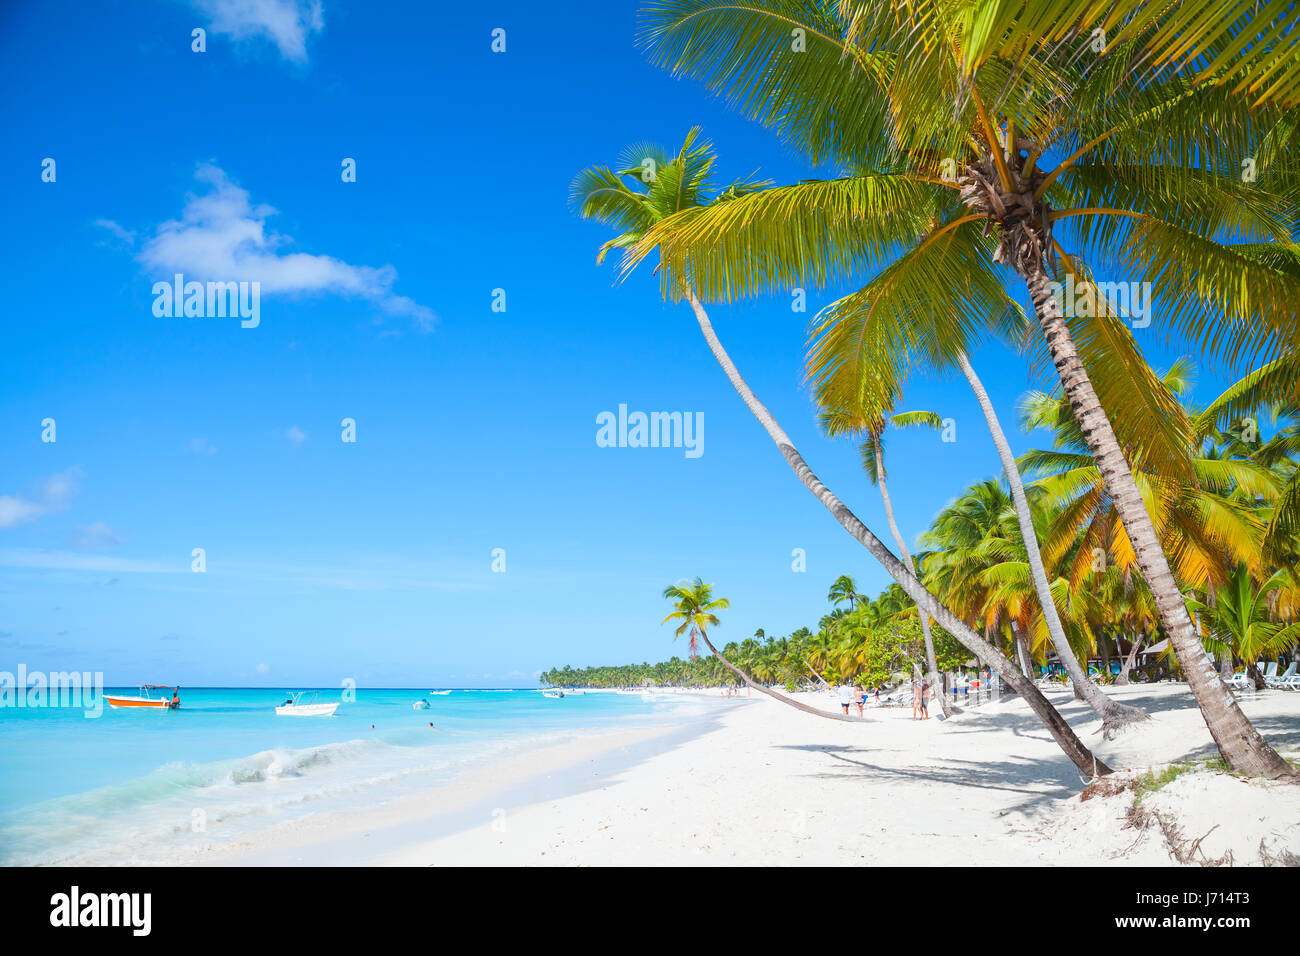 Landschaft mit Palmen wachsen auf sandigen Strand. Karibik, Dominikanische Republik, Saona Insel Küste, beliebten touristischen Ferienort Stockfoto